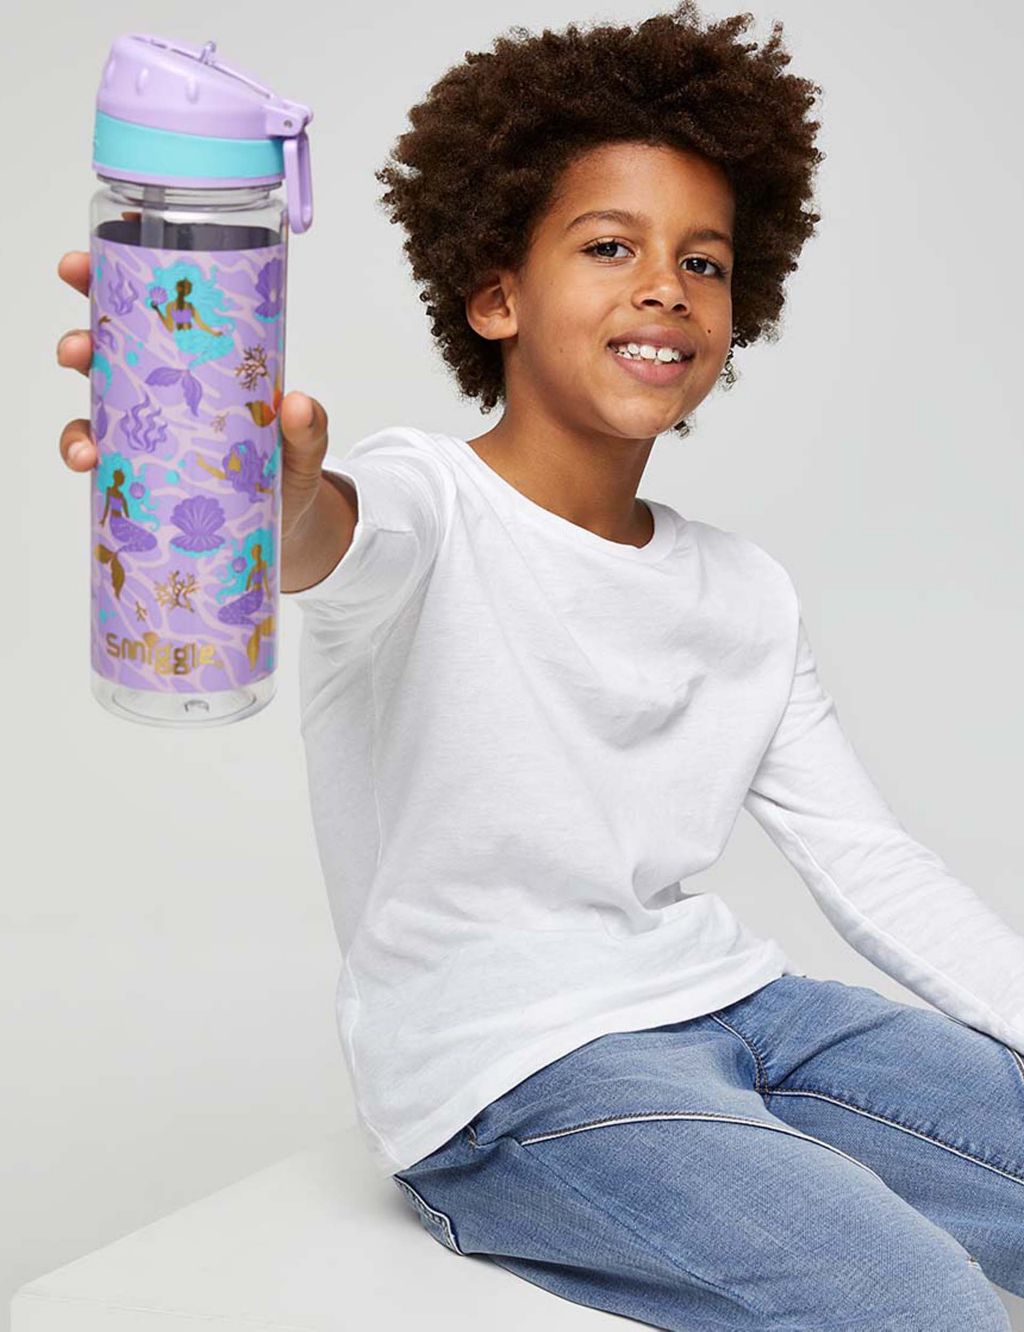 Kids' Mermaid Princess Water Bottle image 1